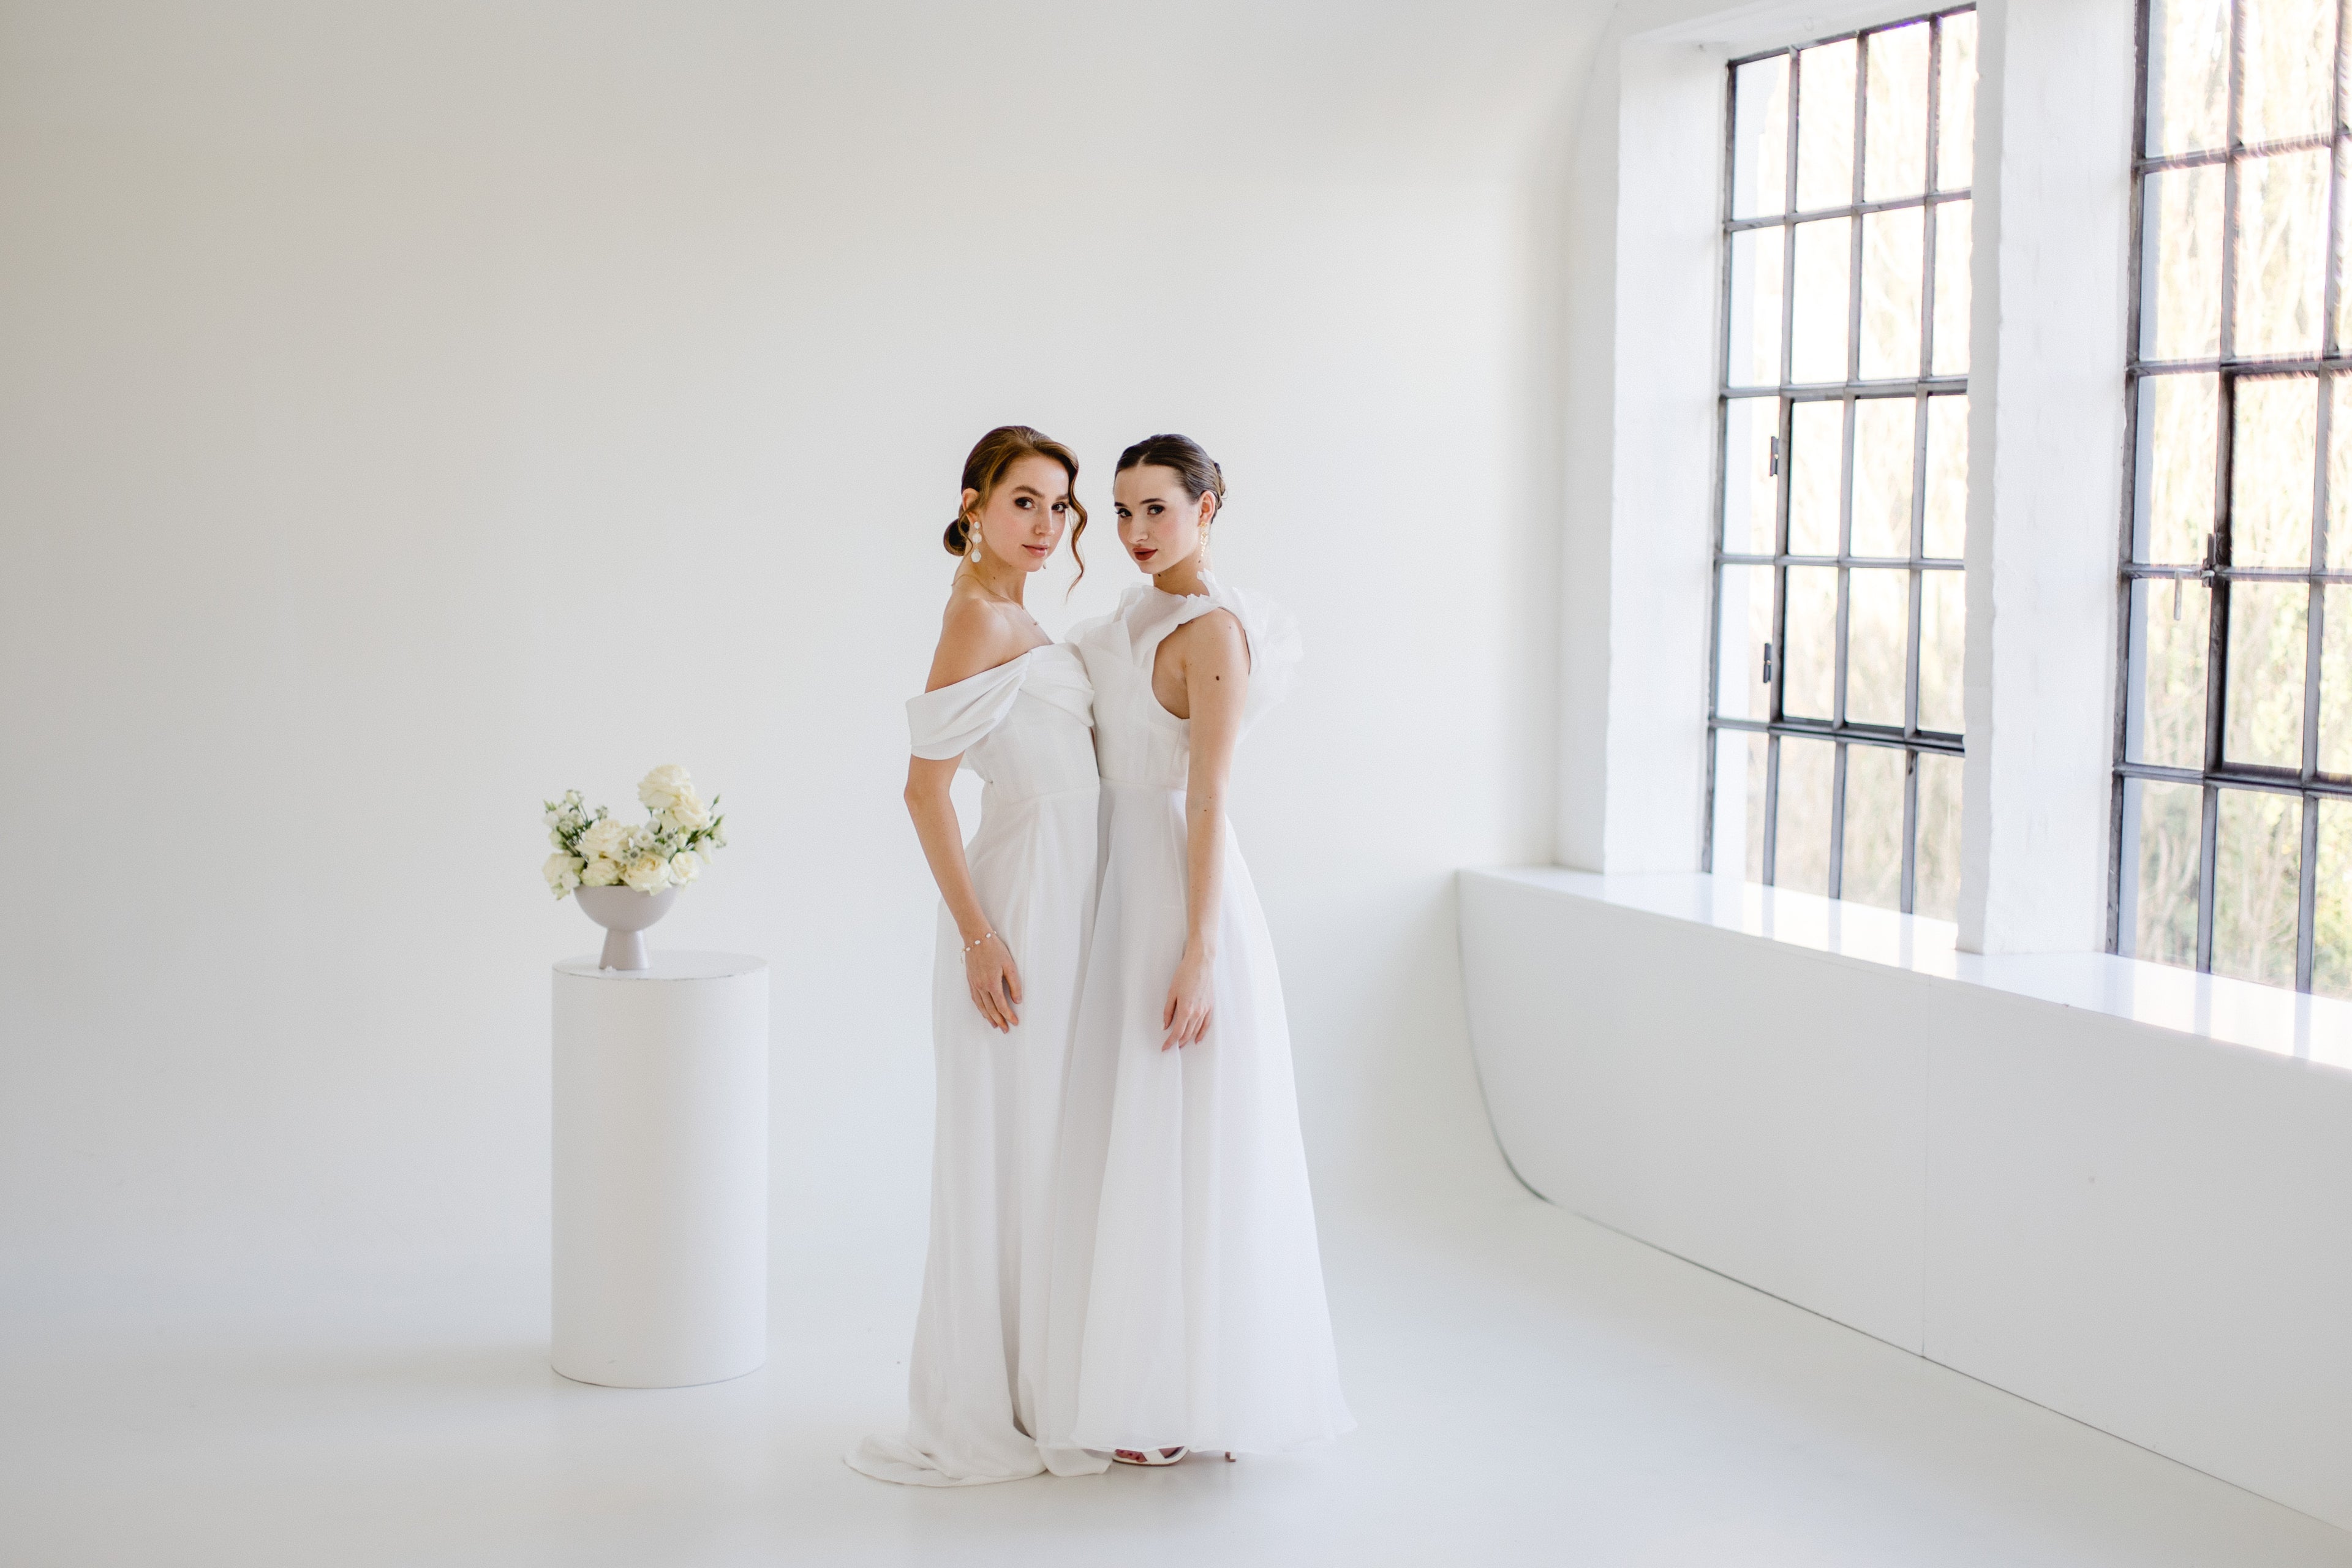 Load video: Hamburg wedding dresses minimalist simple